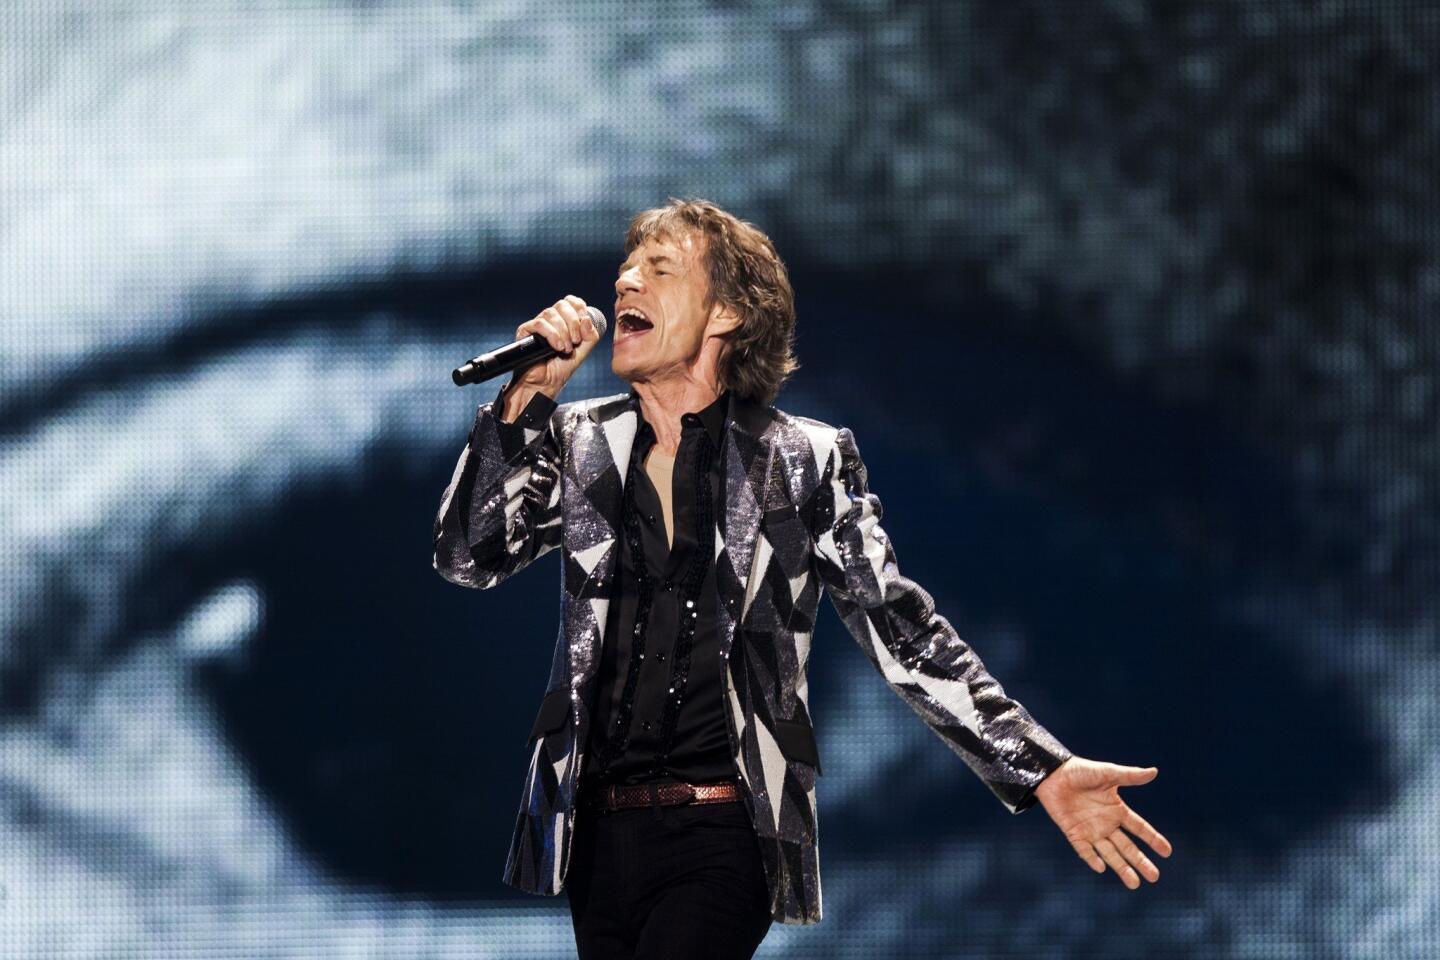 Mick sings